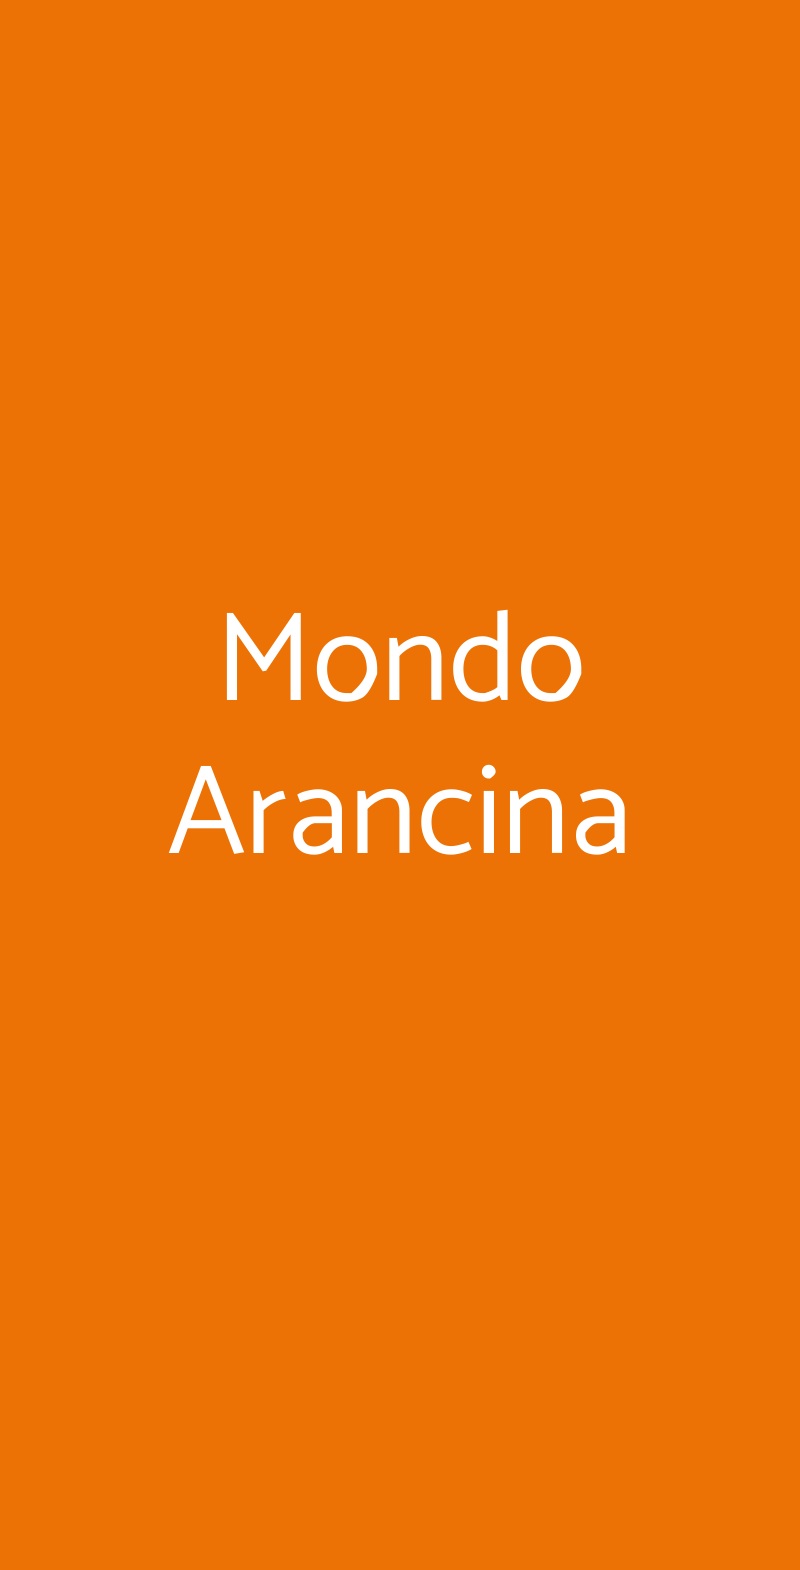 Mondo Arancina Roma menù 1 pagina